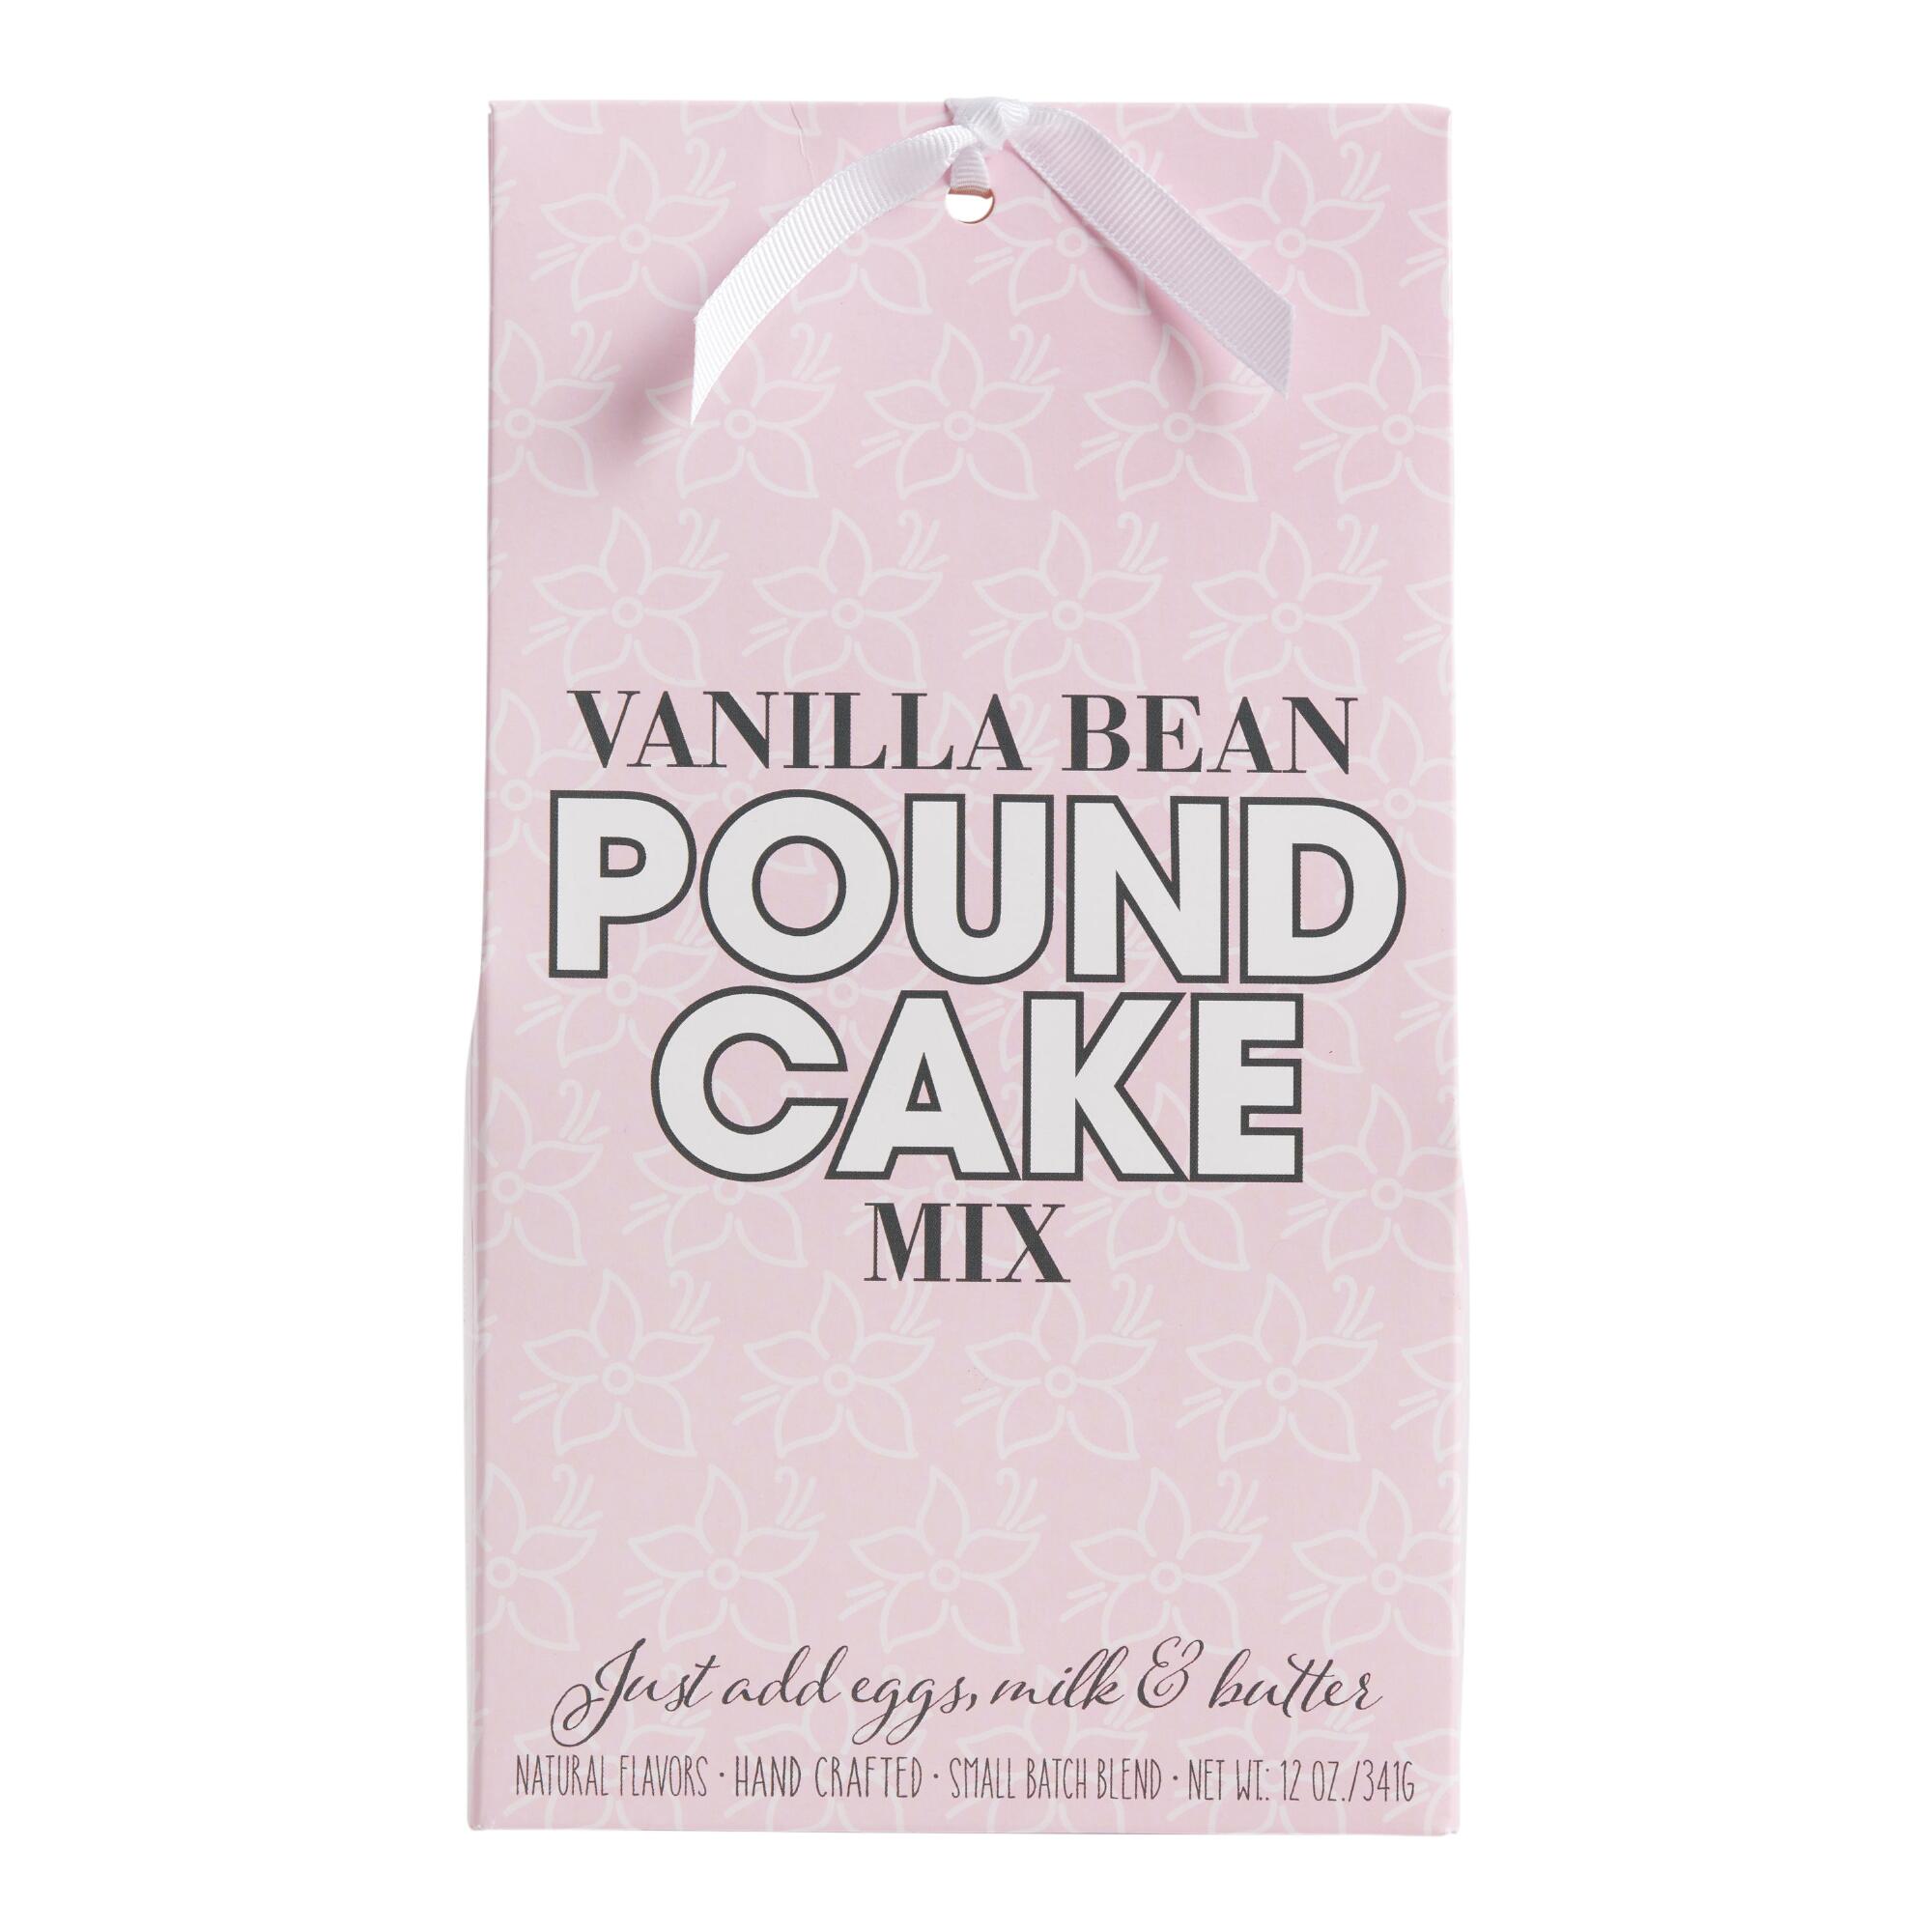 Vanilla Bean Pound Cake Mix by World Market